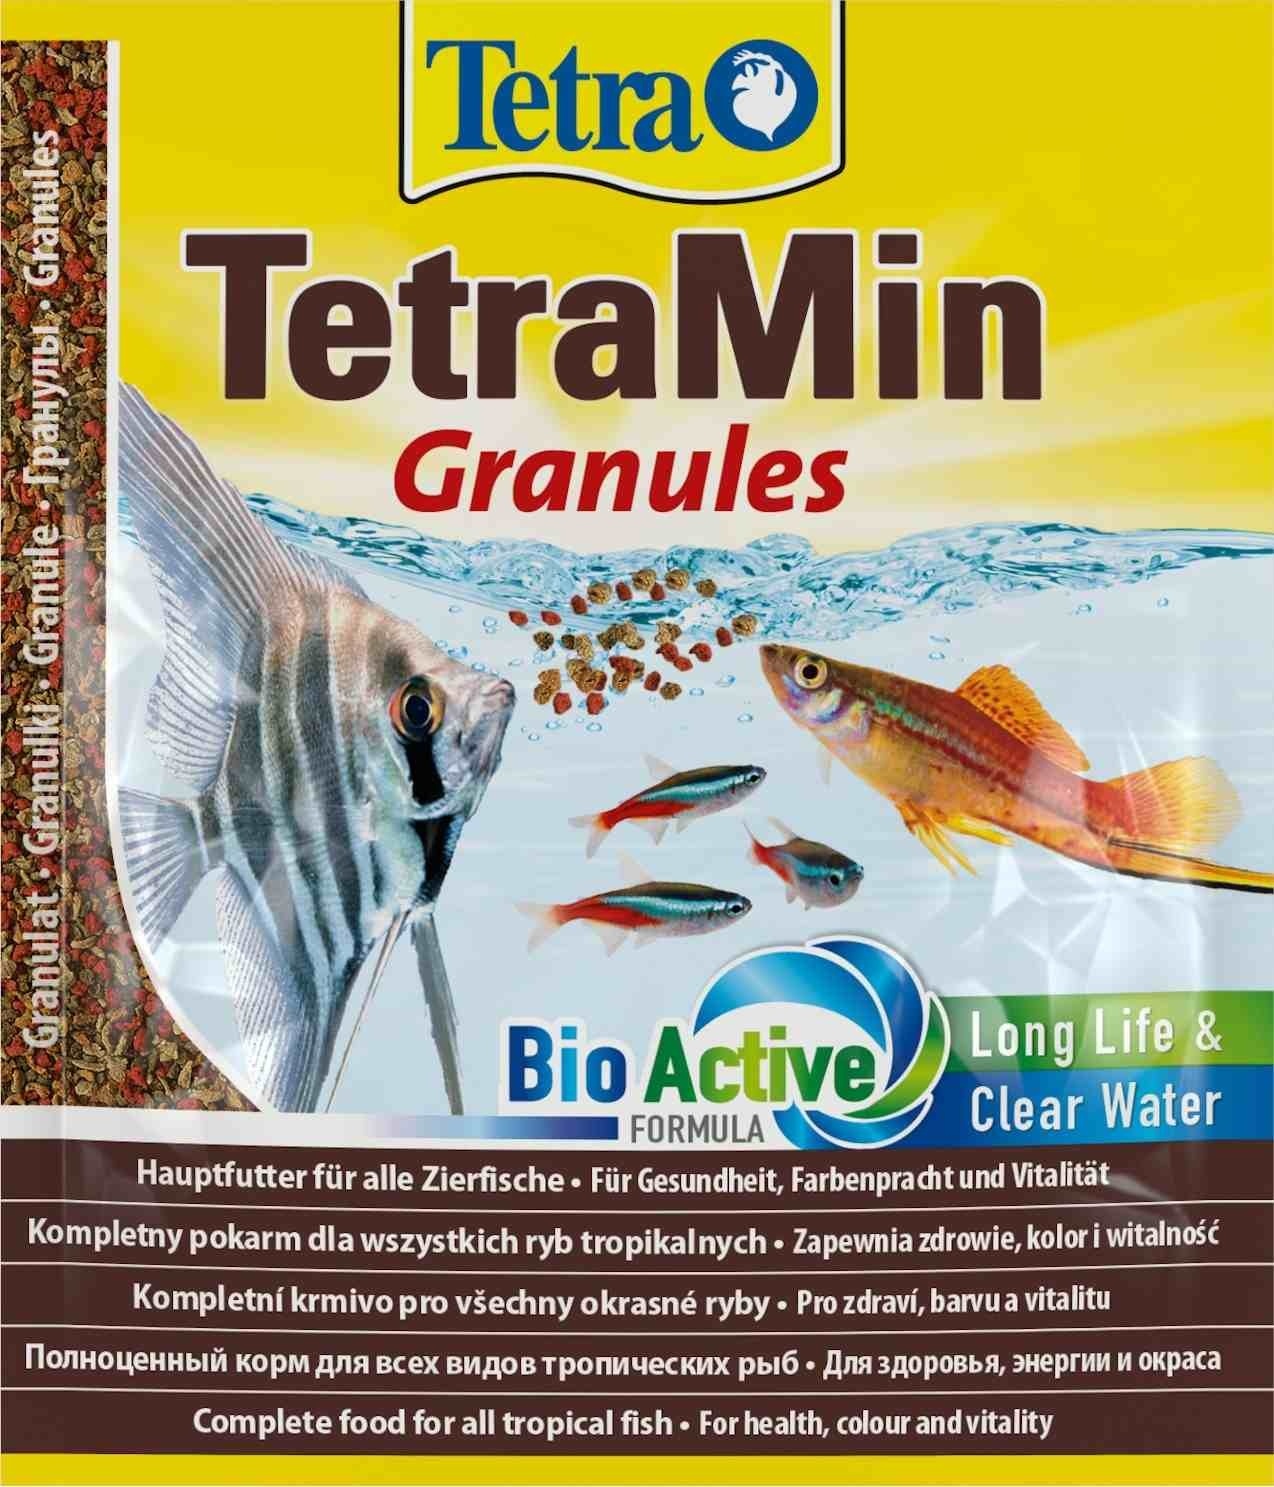 Tetra (корма) Tetra (корма) корм для всех видов тропических рыб. гранулы TetraMin Granules (15 г) tetra корма tetra корма корм для всех видов рыб мелкие гранулы 45 г